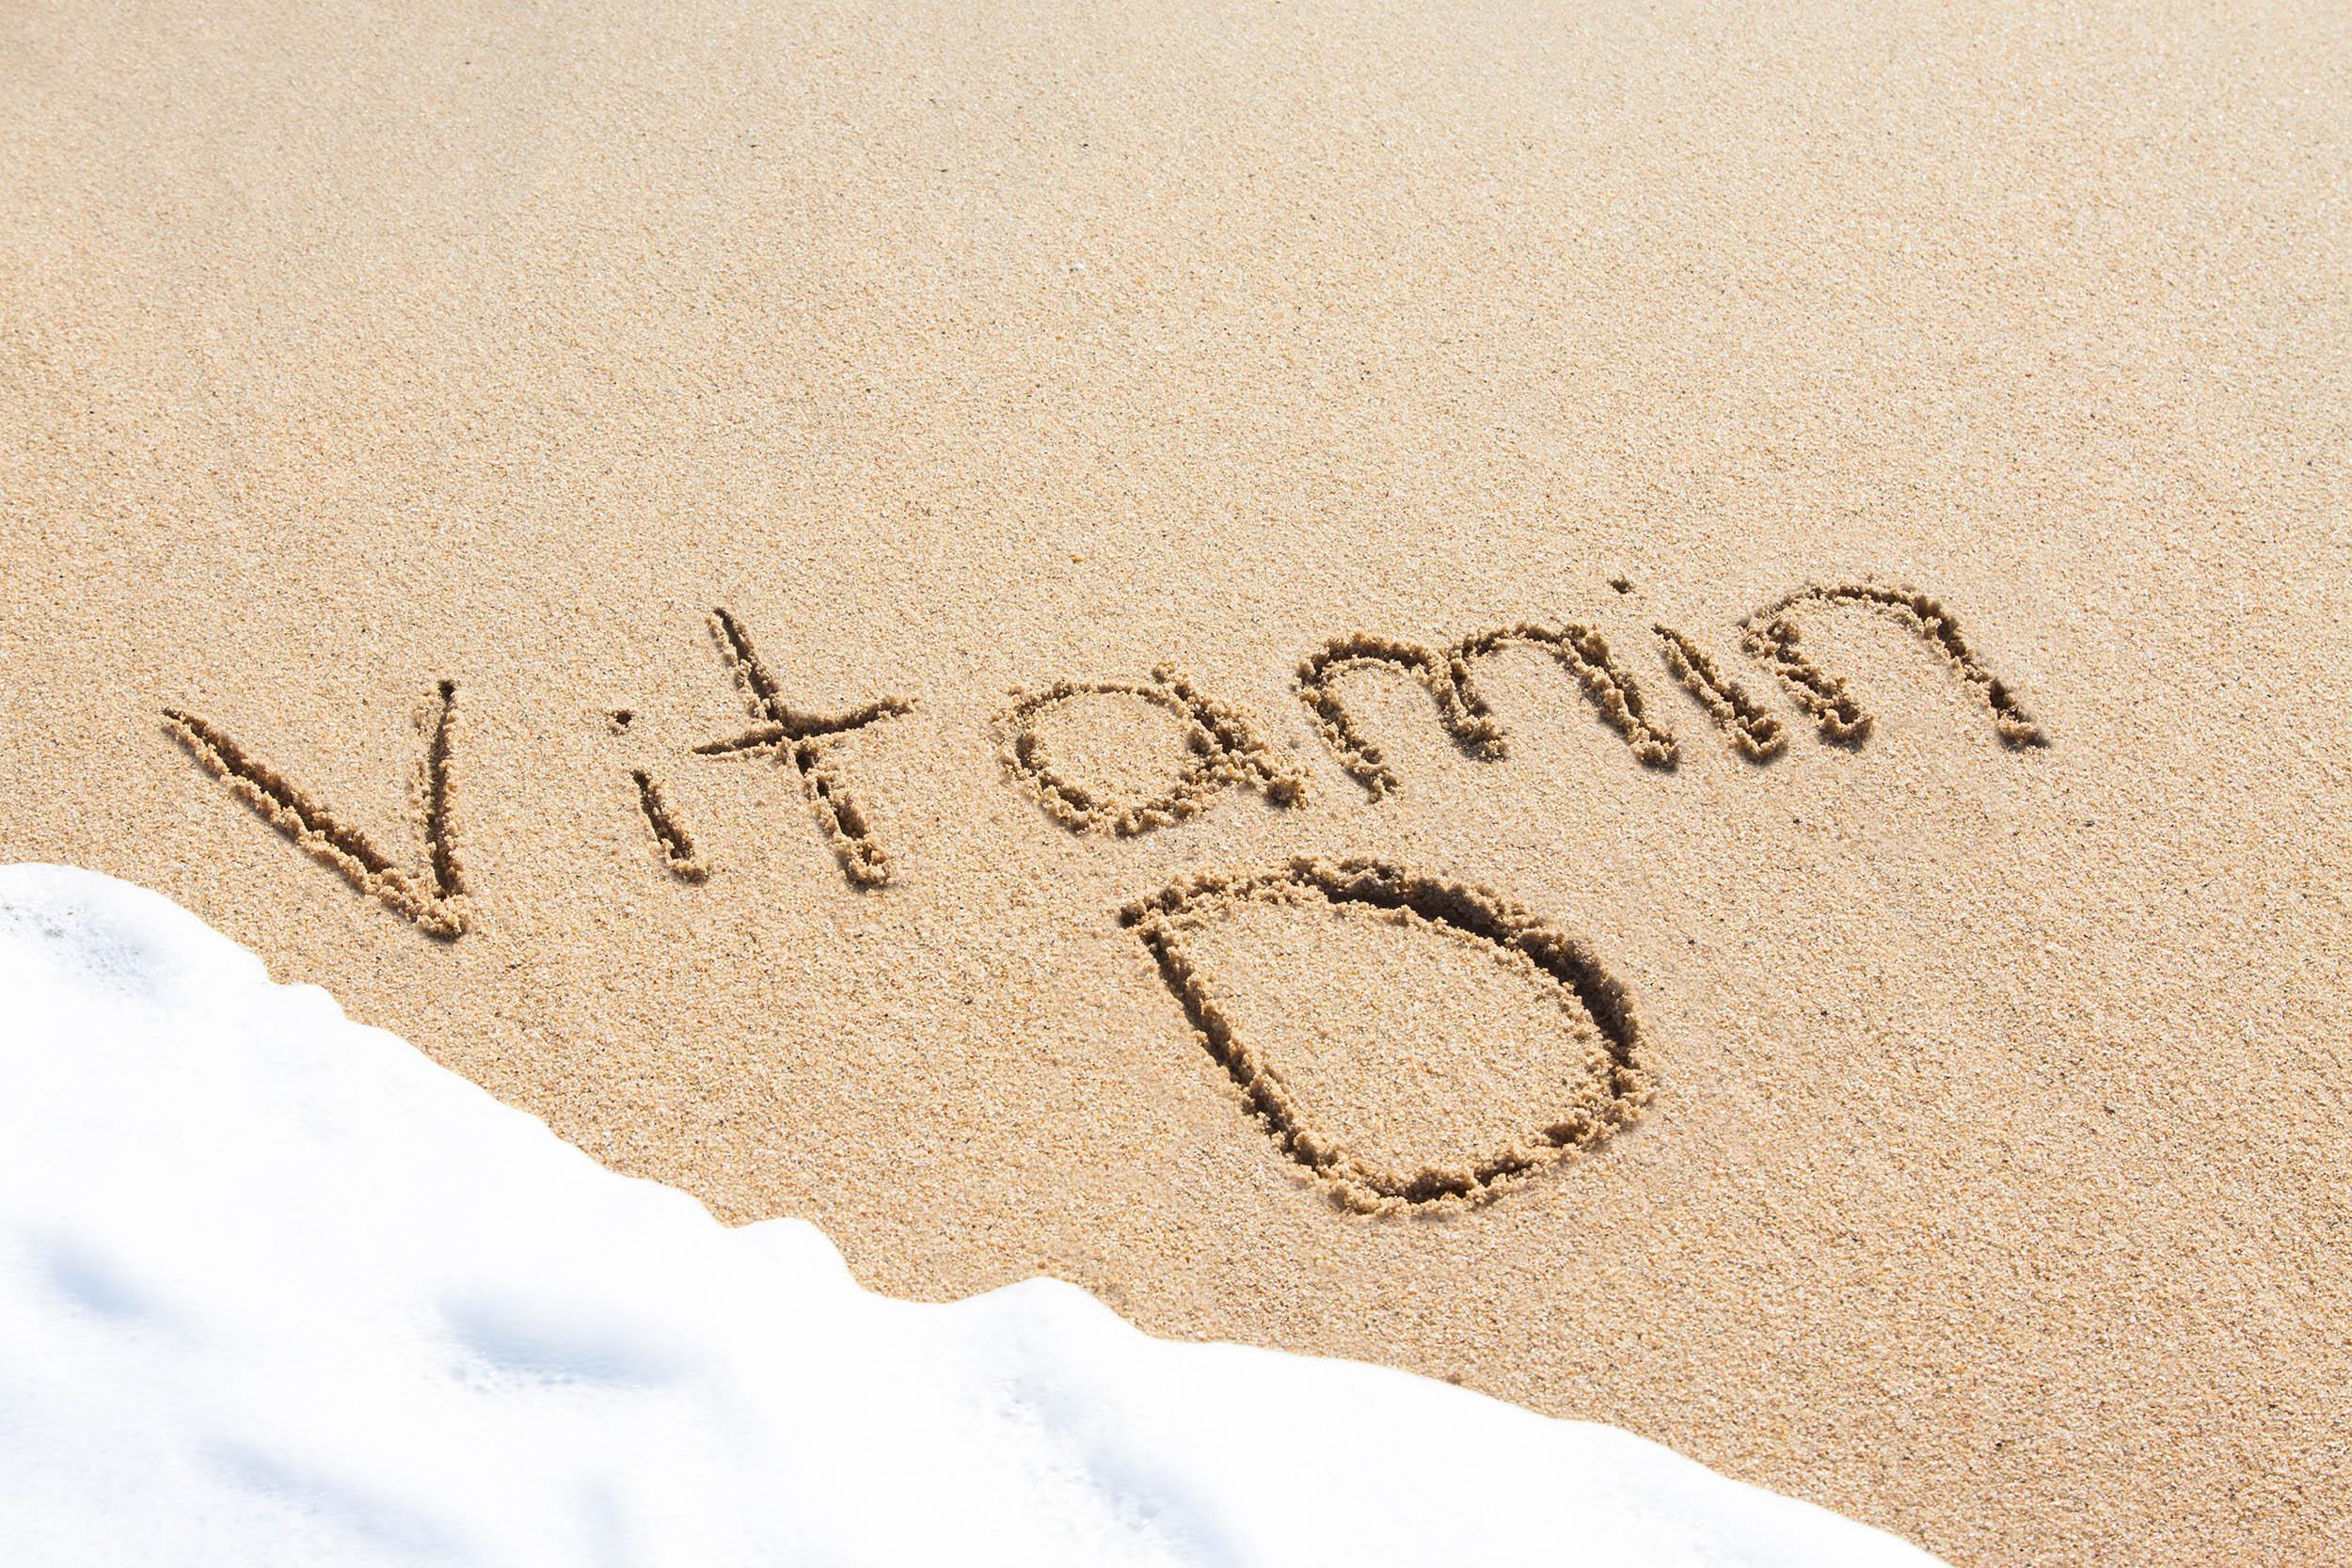 Türkiyede D vitamini eksikliği ciddi boyutlara ulaştı (D vitamini eksikliği nasıl giderilir)